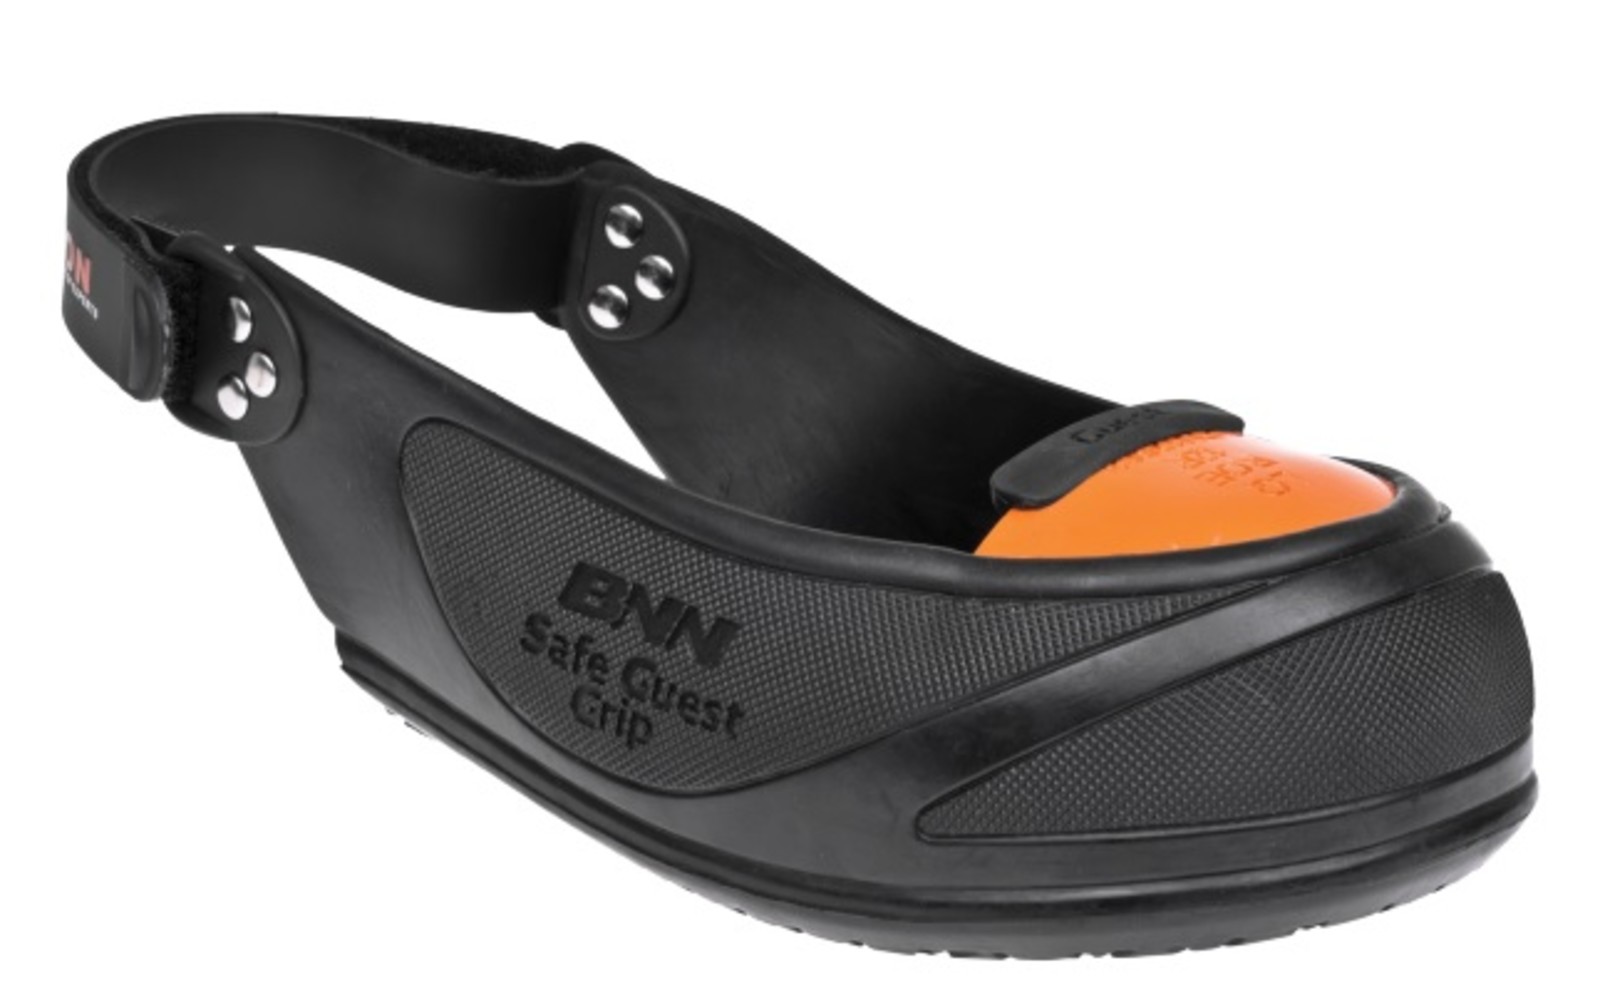 Bezpečnostné návleky na obuv Bennon Safe Guest  - veľkosť: 36-42